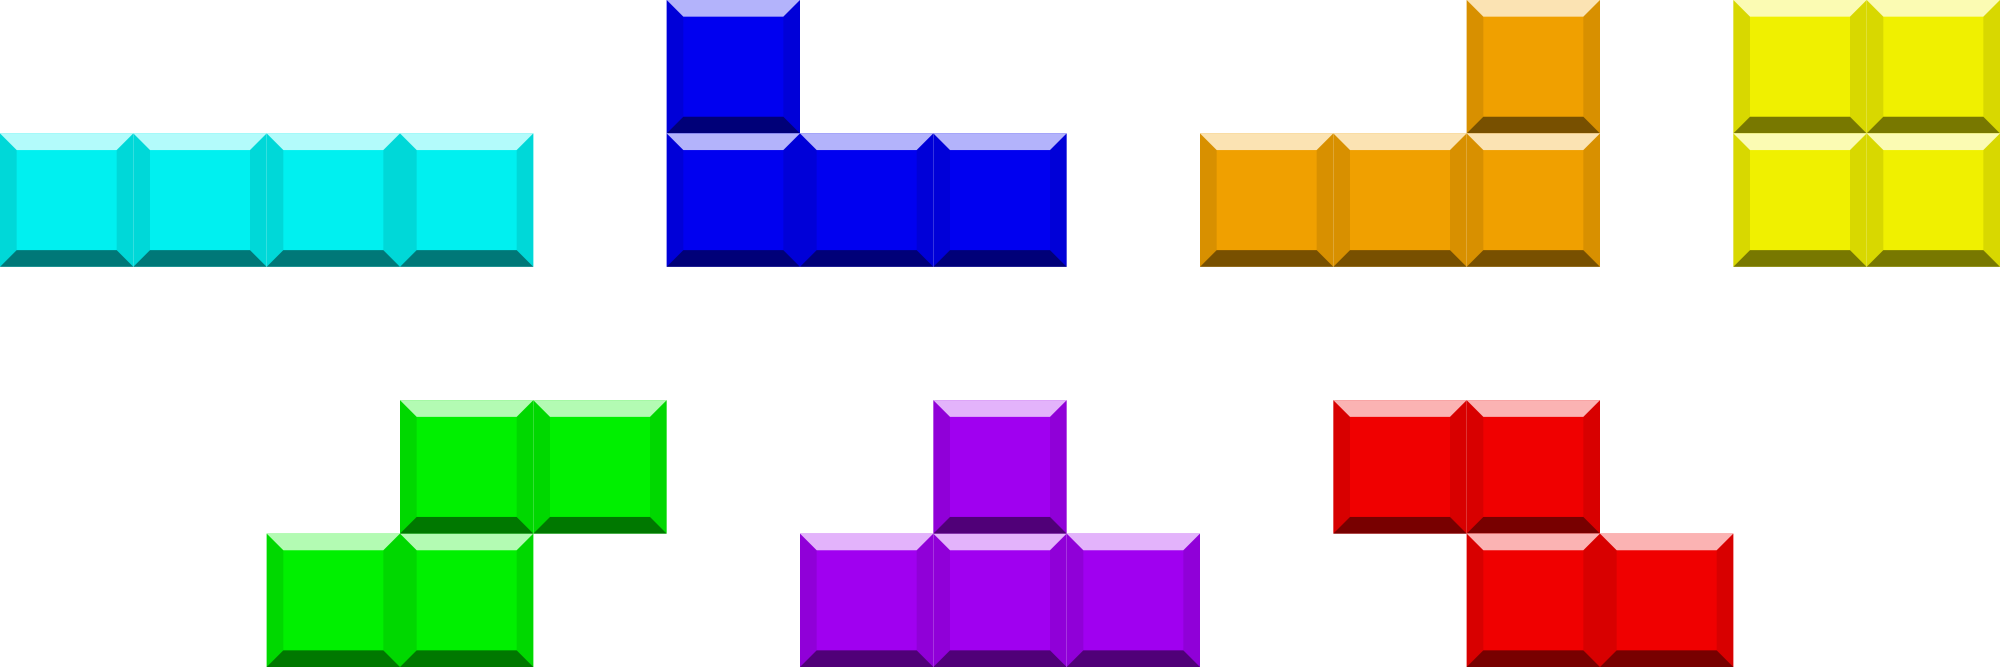 Tetris PNG Photo Clip Art Image